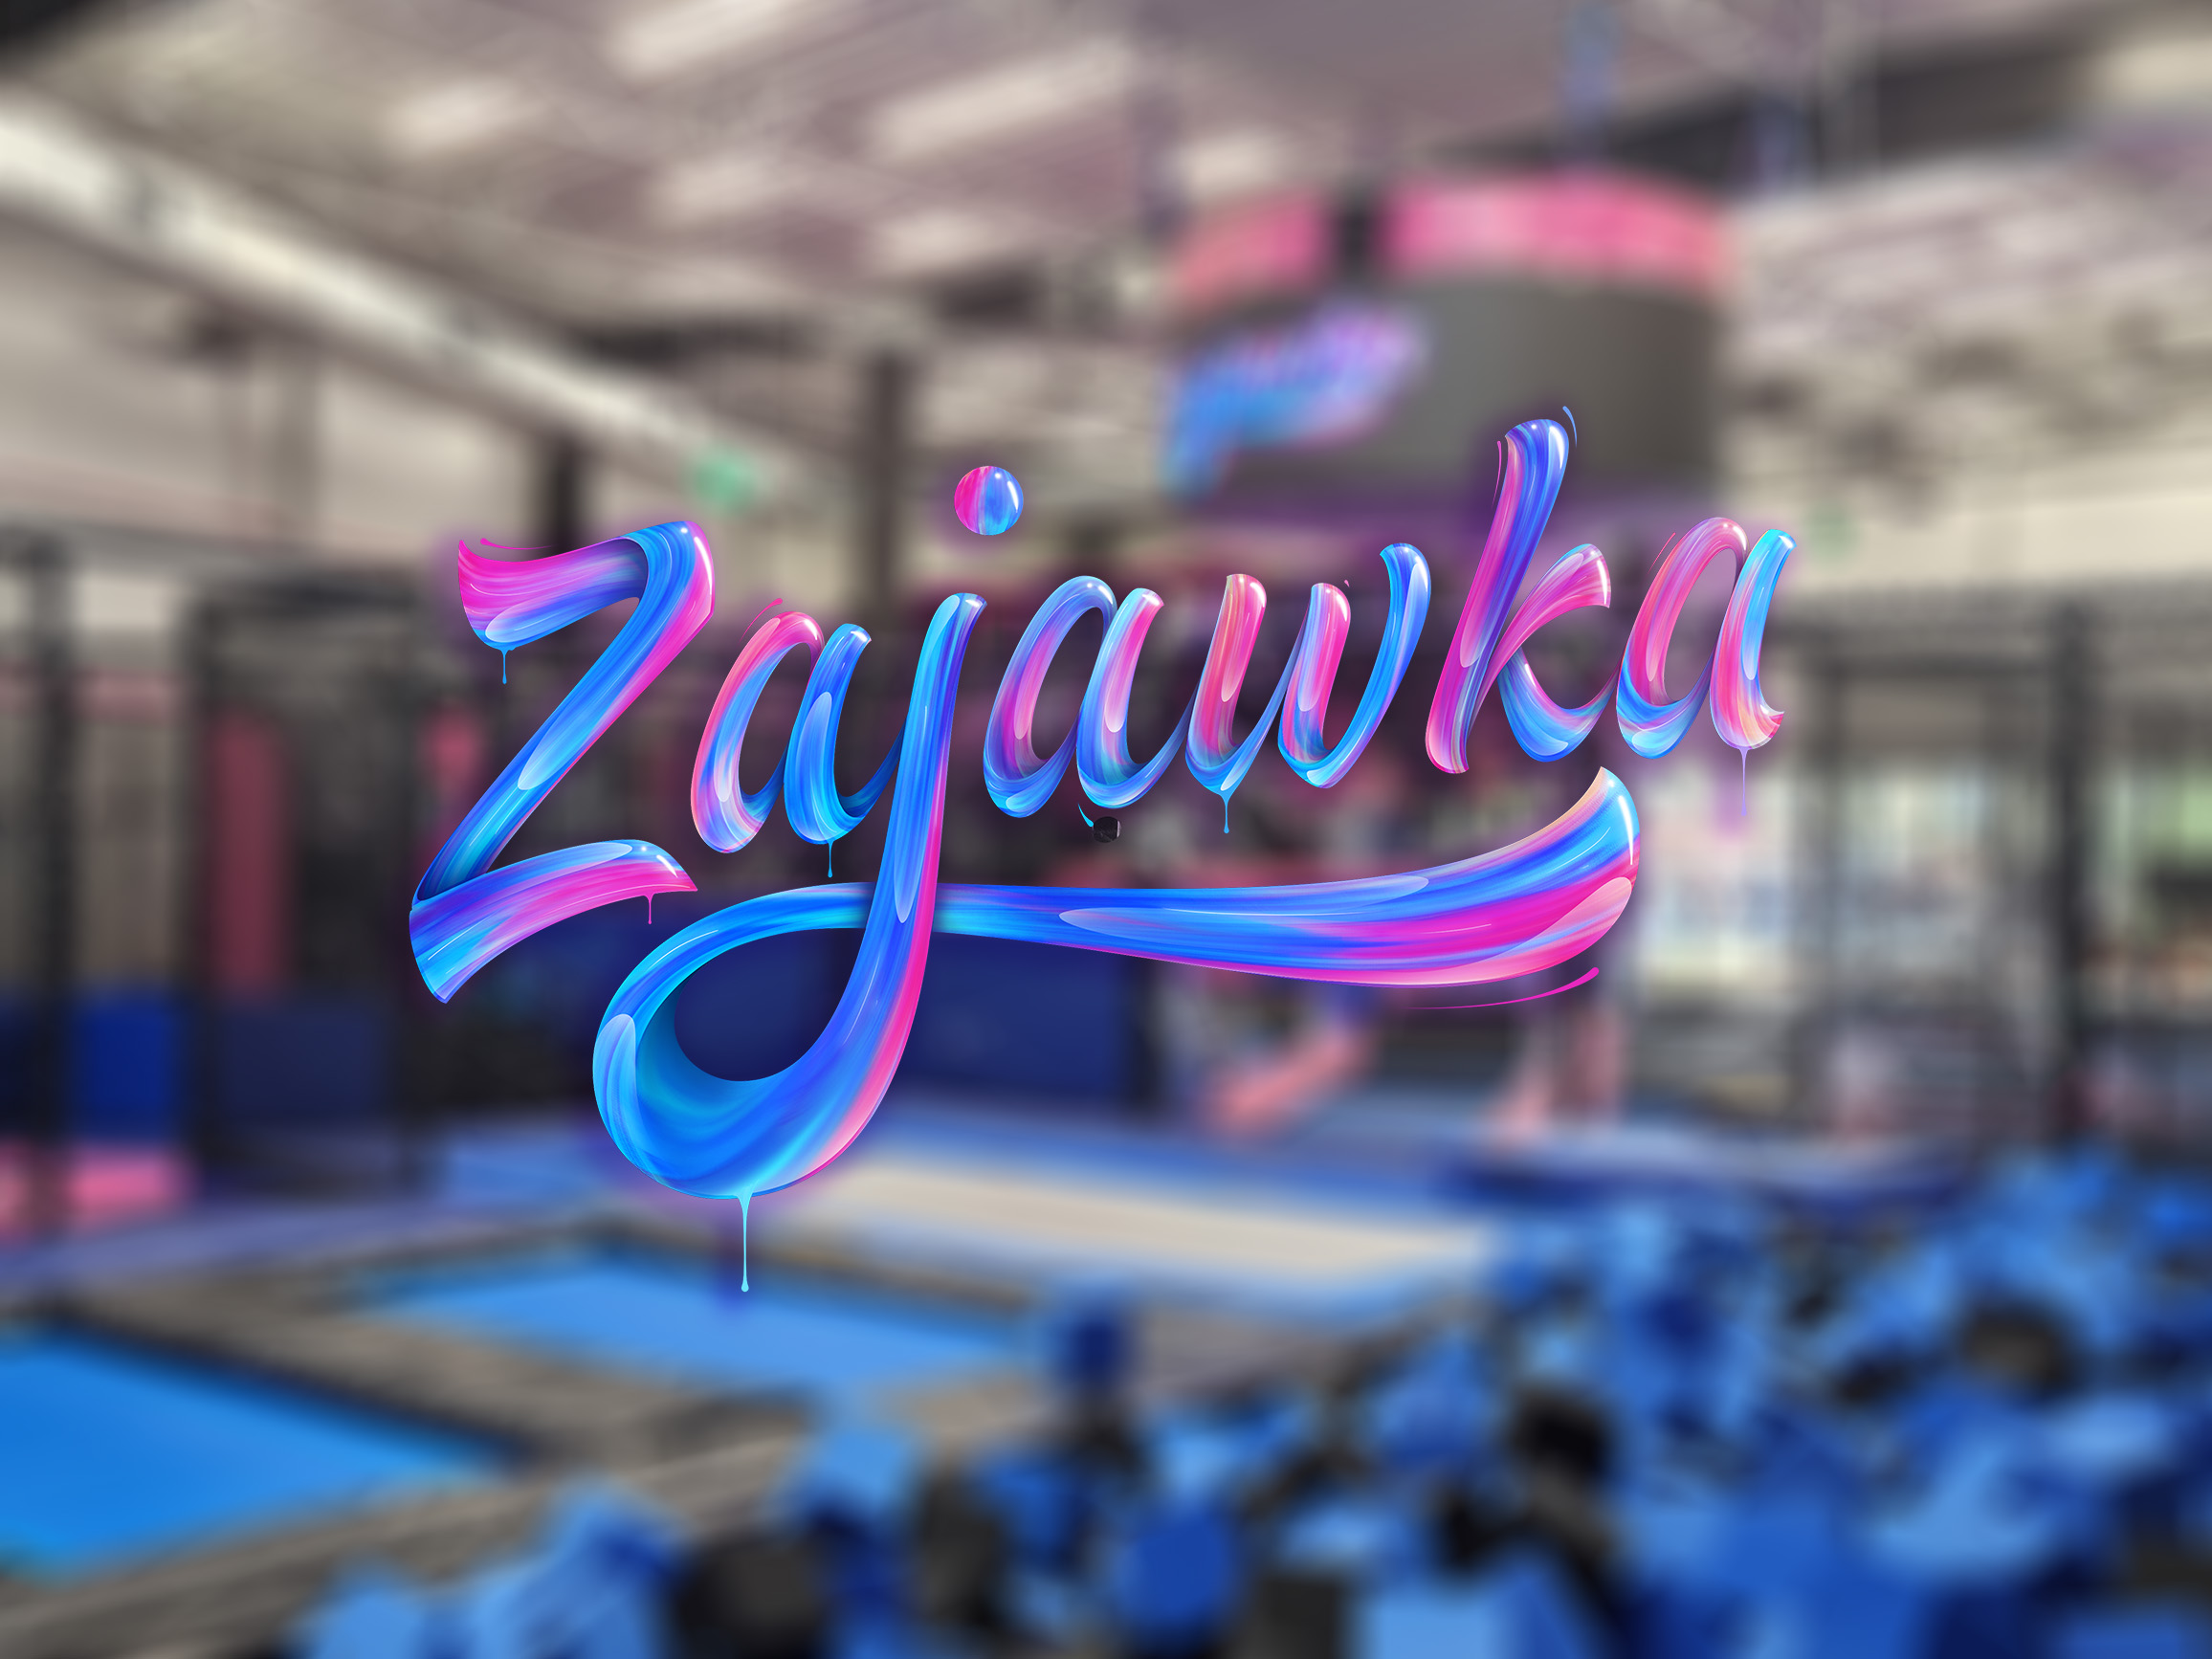 Zajawka – park trampolin